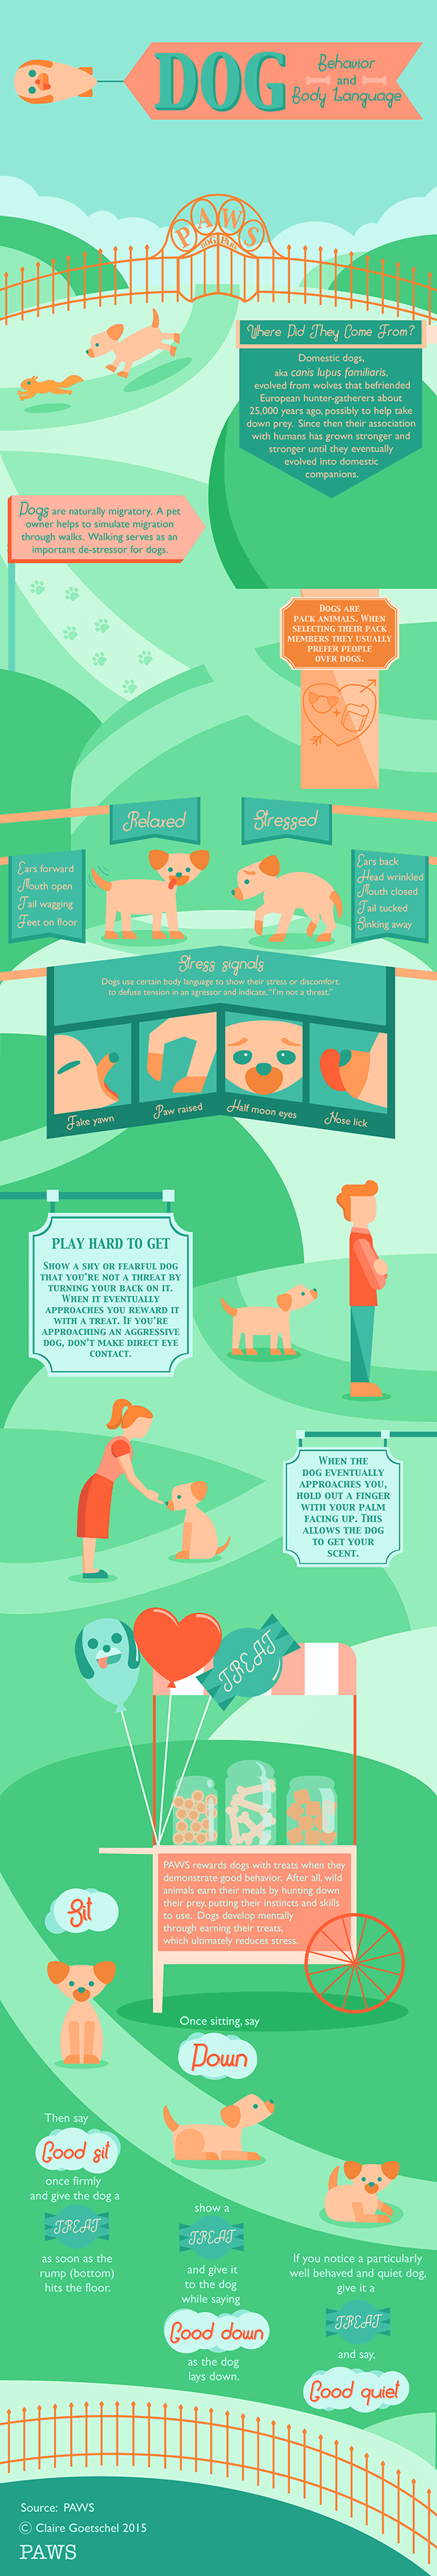 Dog habits